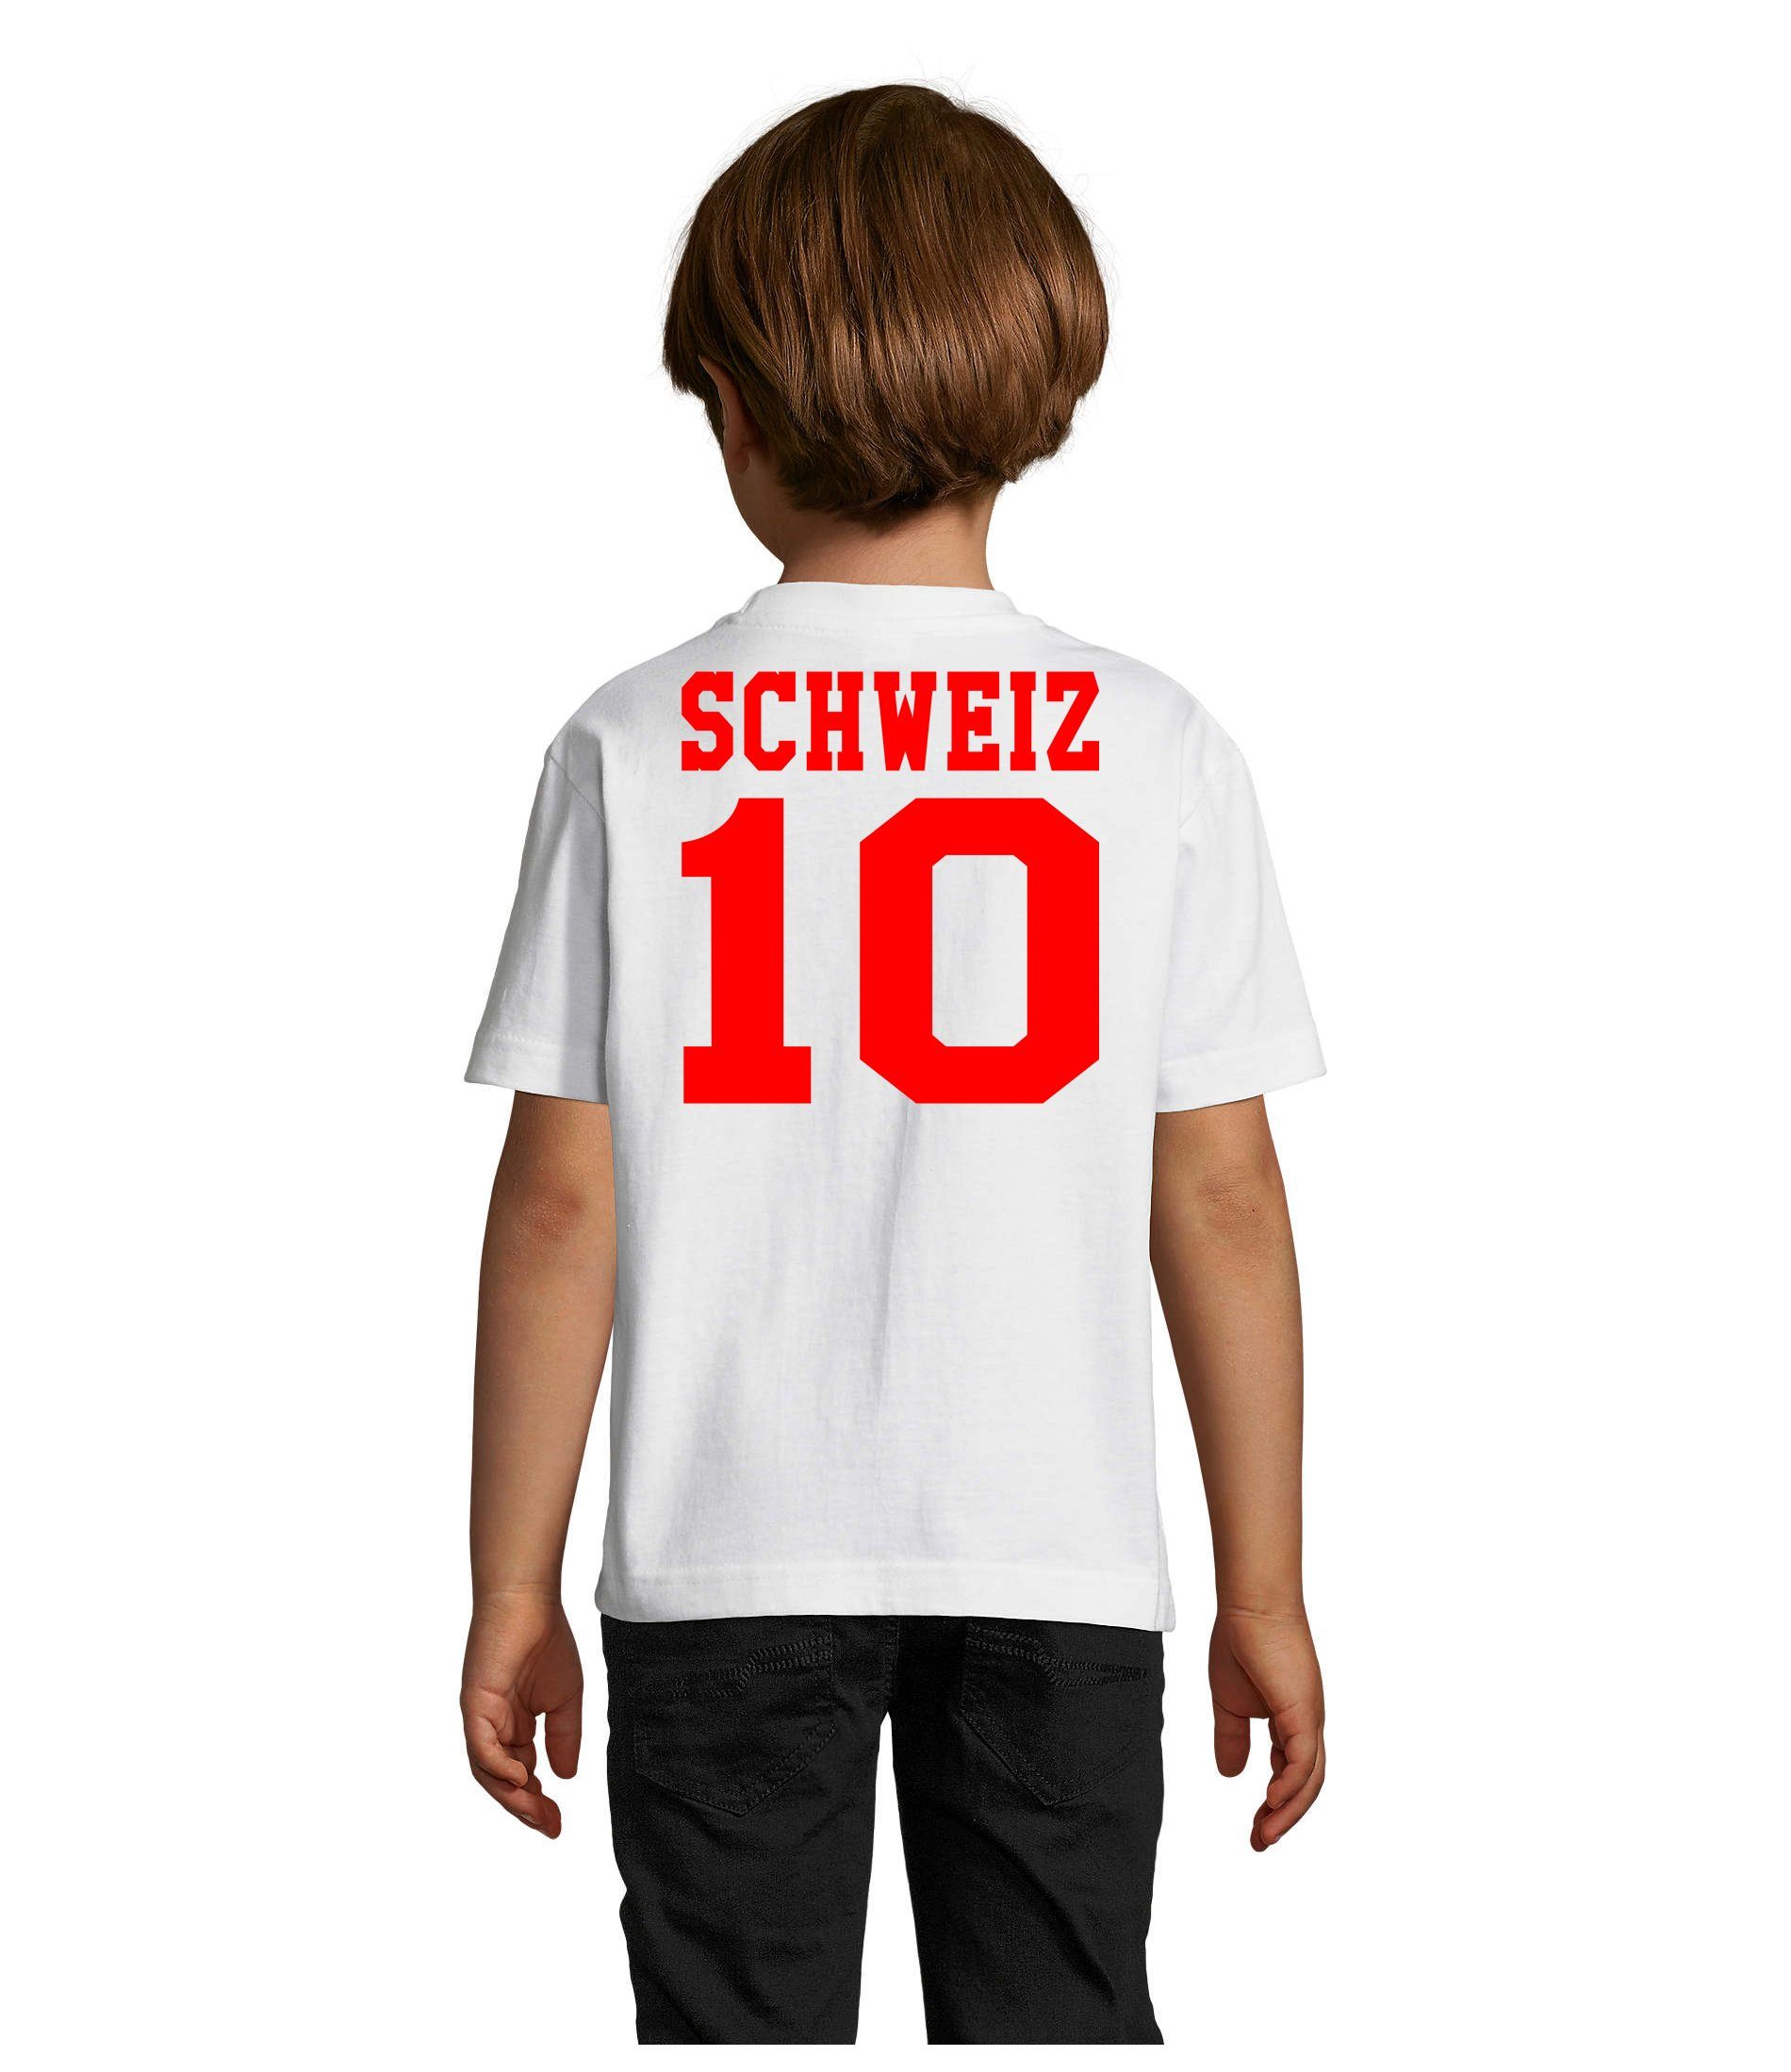 EM Schweiz Kinder Brownie Fußball Europa Swiss Sport WM & T-Shirt Trikot Blondie Meister